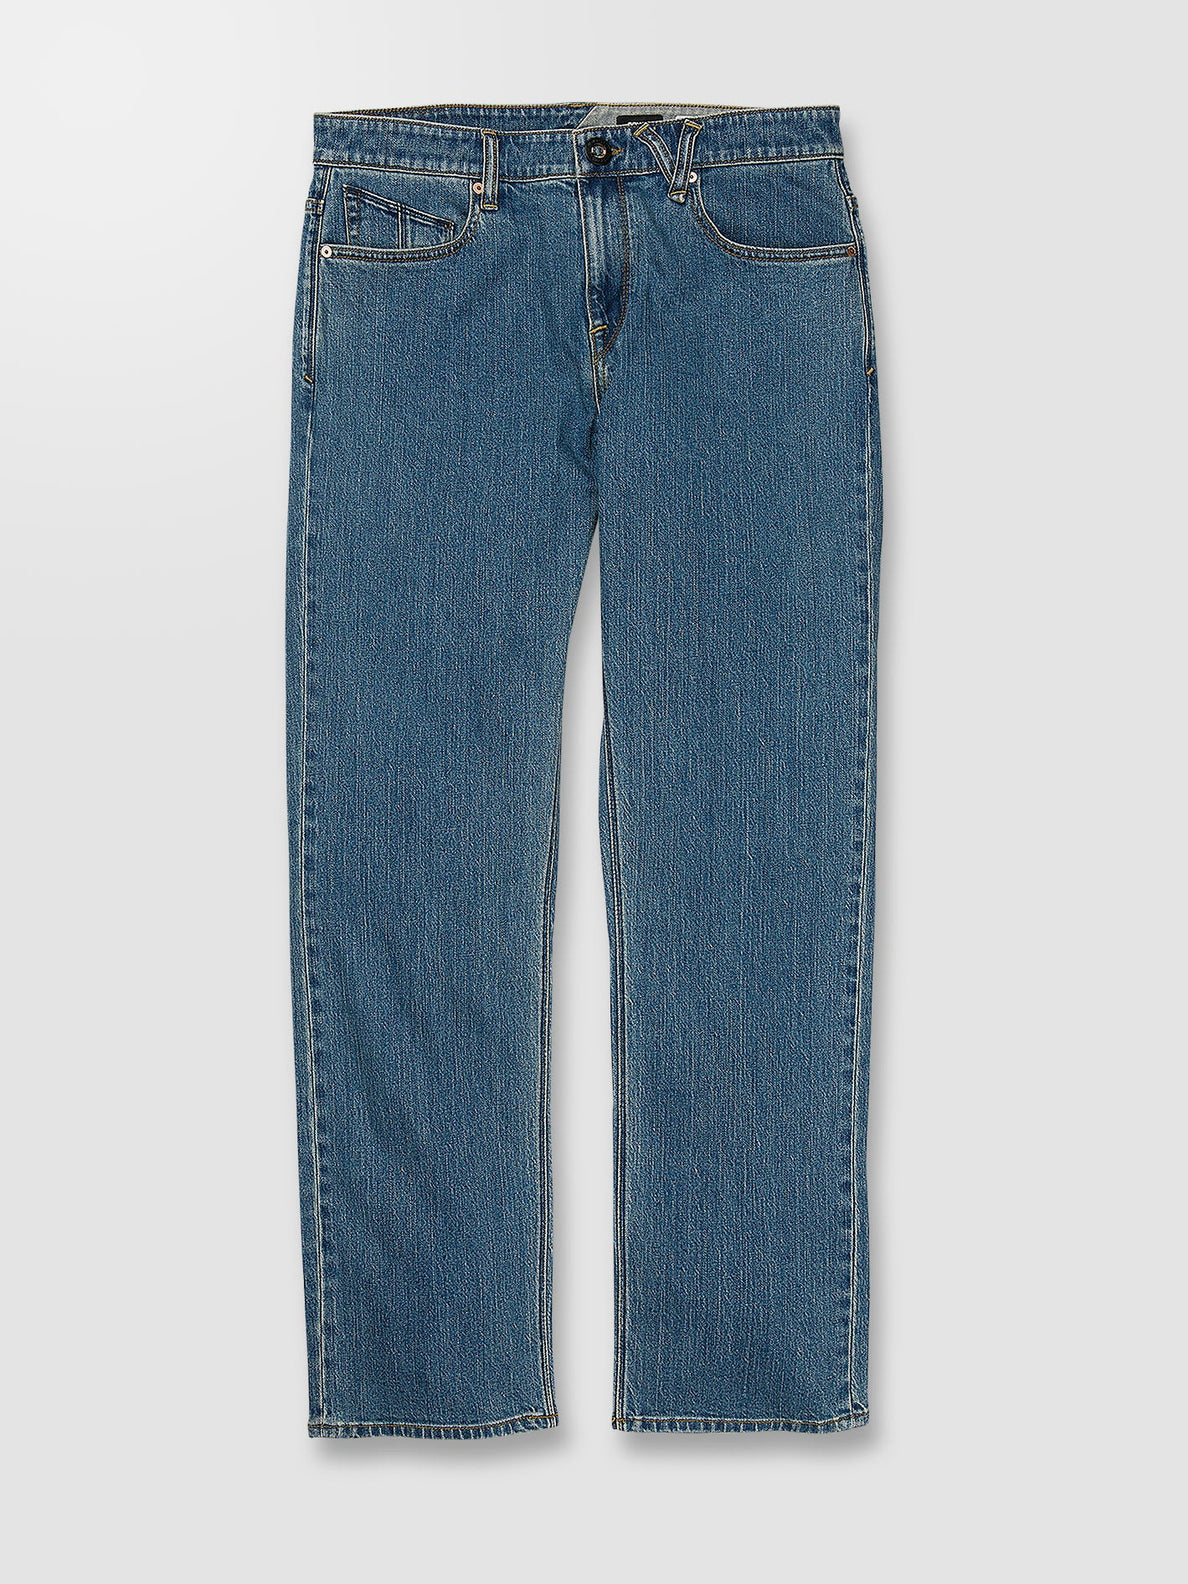 Solver Jeans - AGED INDIGO (A1932204_AIN) [9]